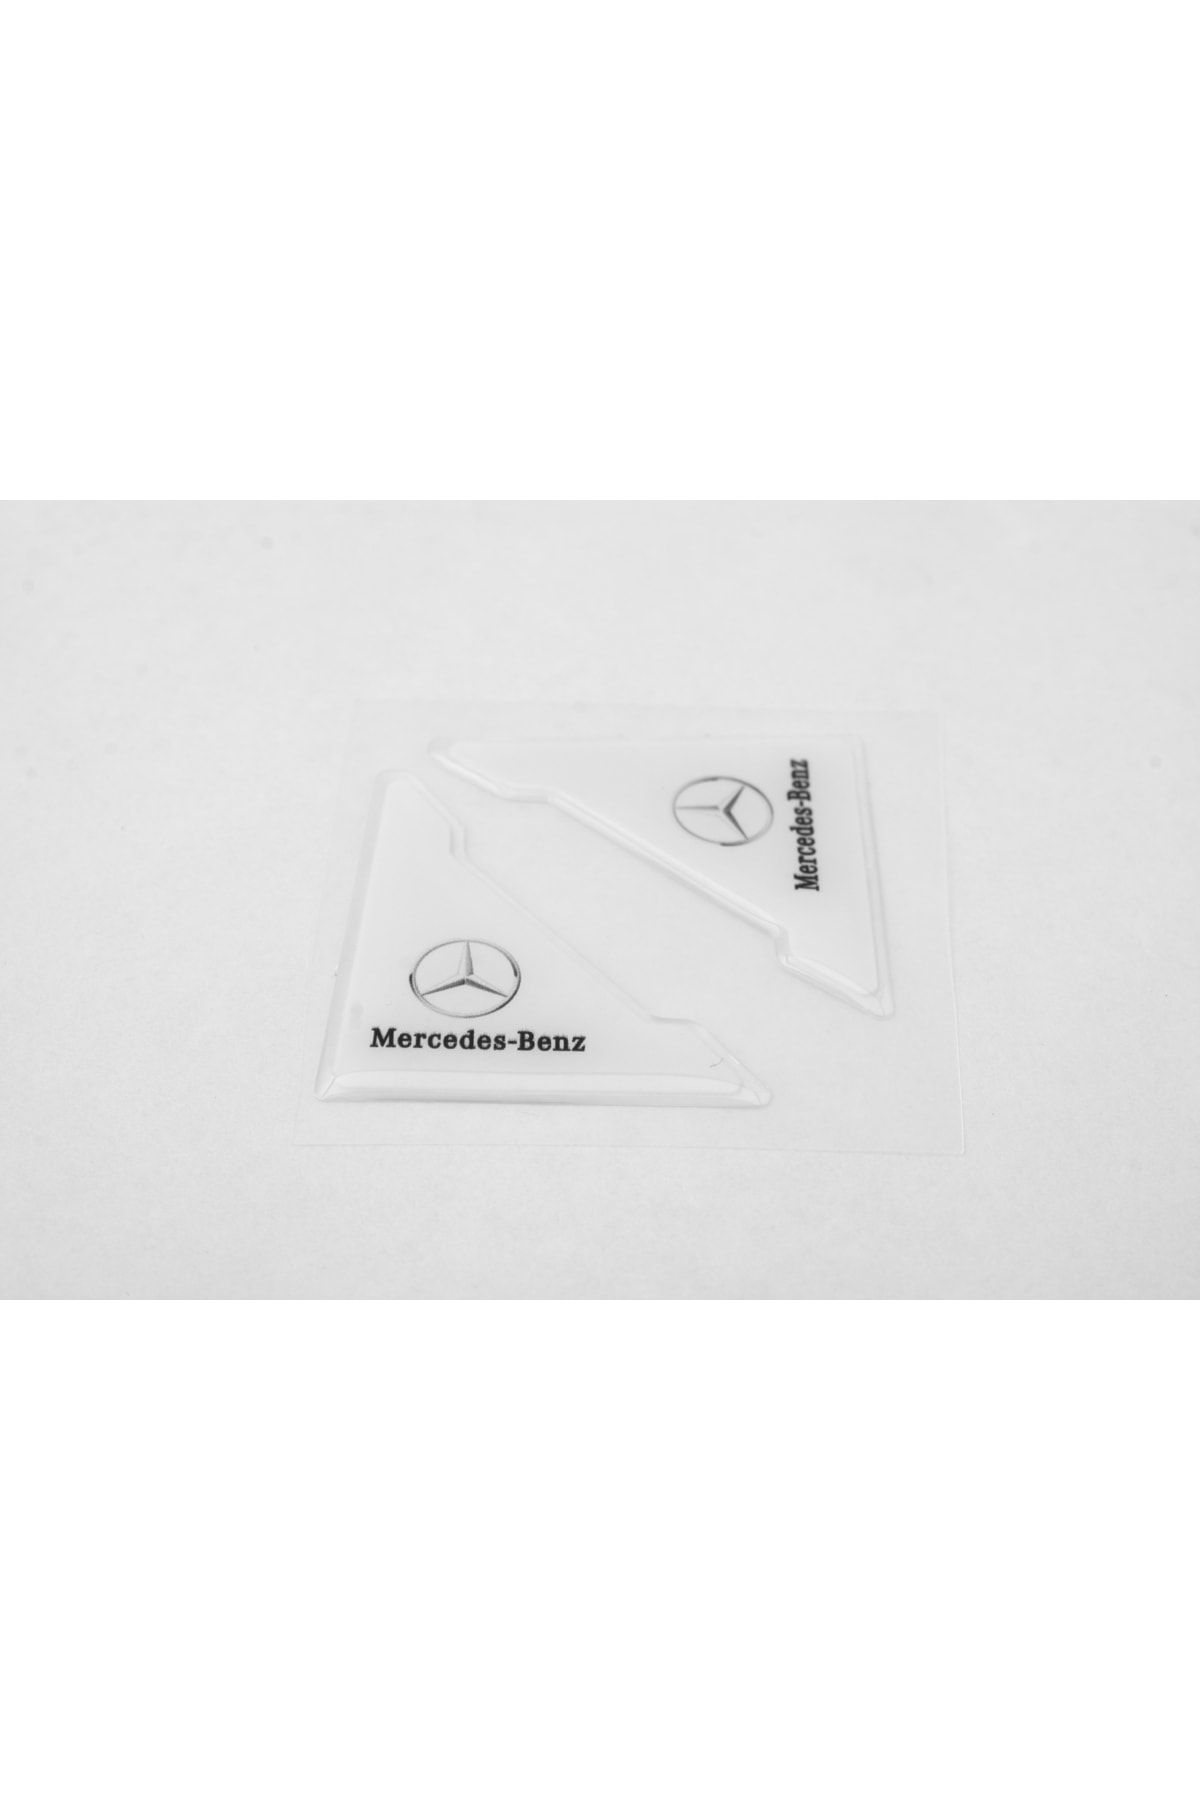 Flow Mercedes Özel Logolu Otomobil Kapı Çizik Darbe Koruma Silikon Beyaz Uyumlu